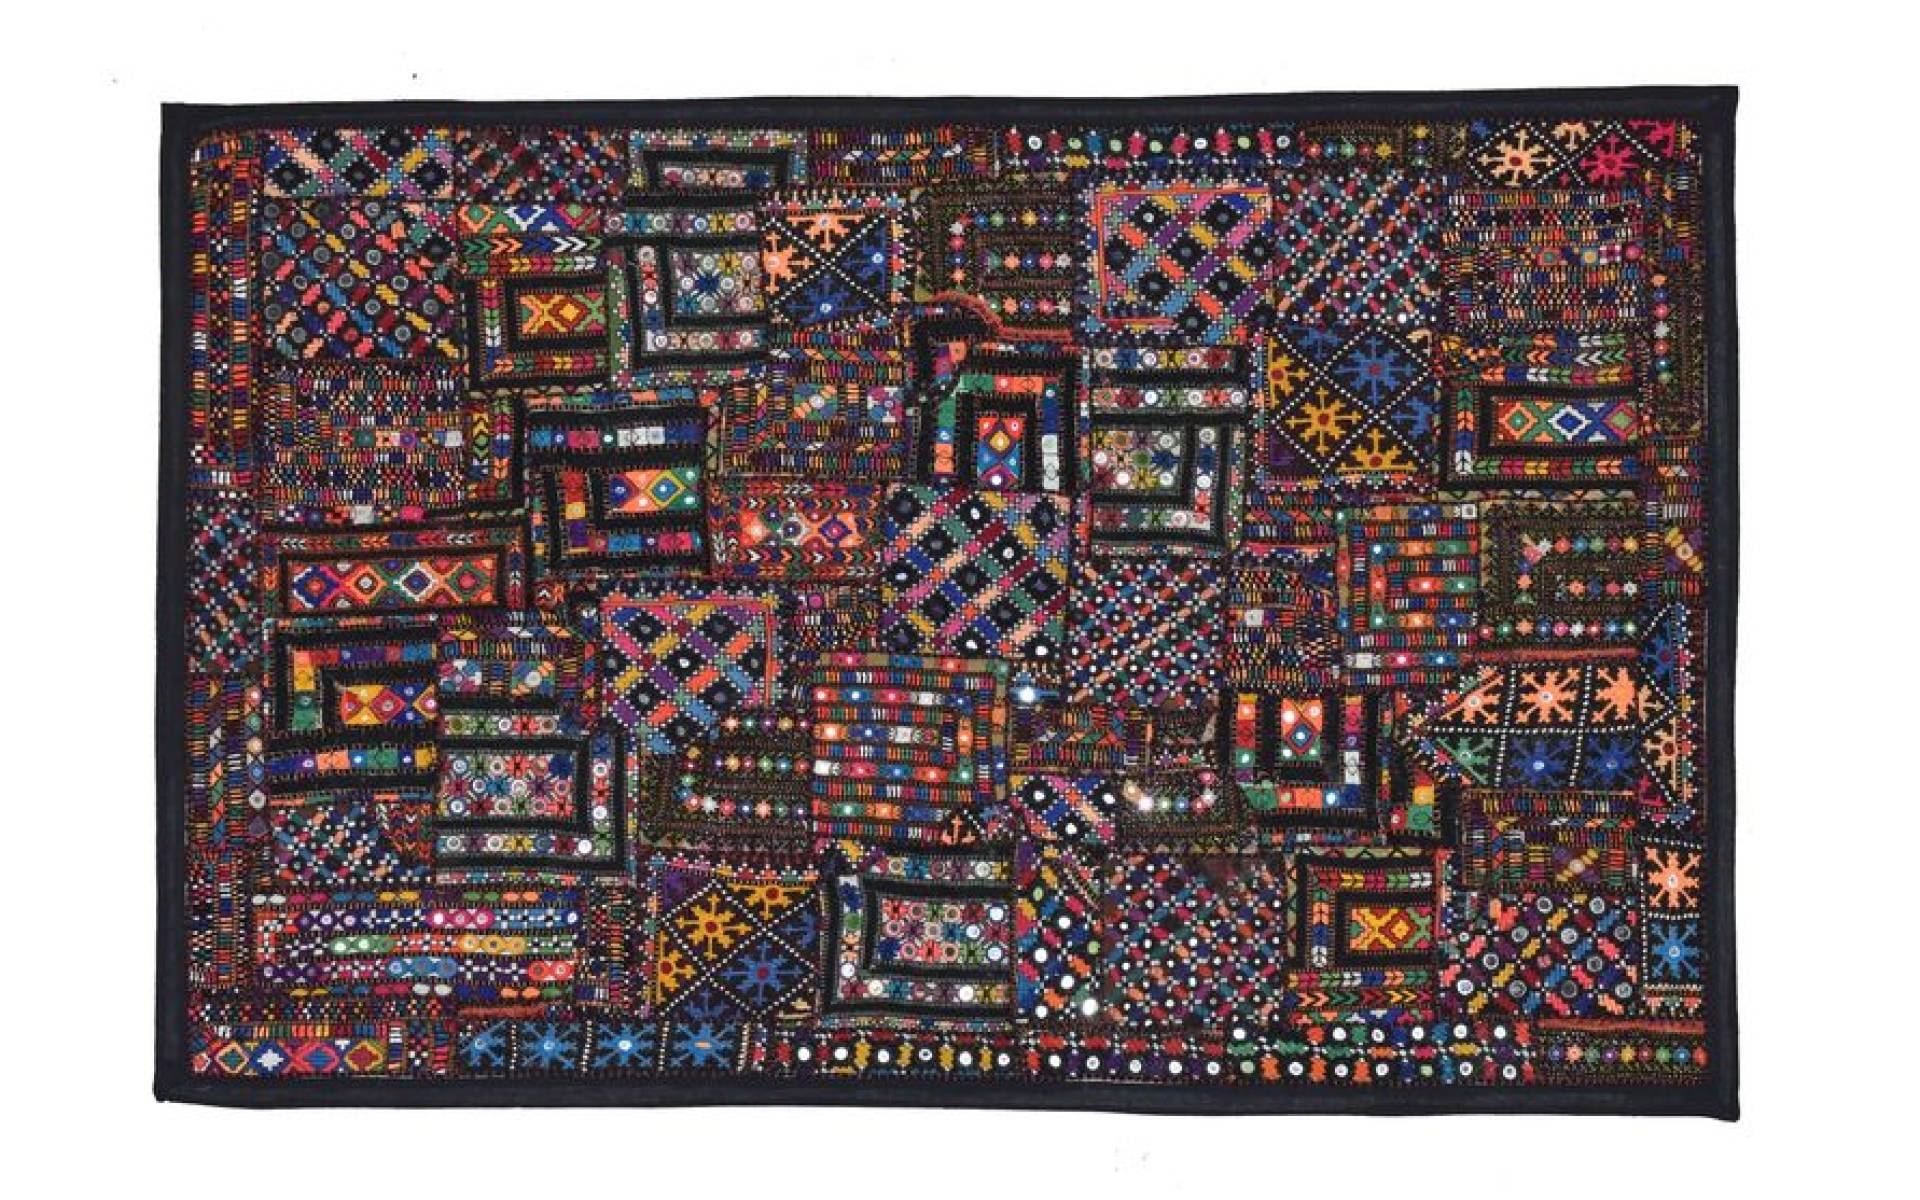 Patchworková tapiséria z Rajastanu, ručná práca, farebná, 90x140 cm